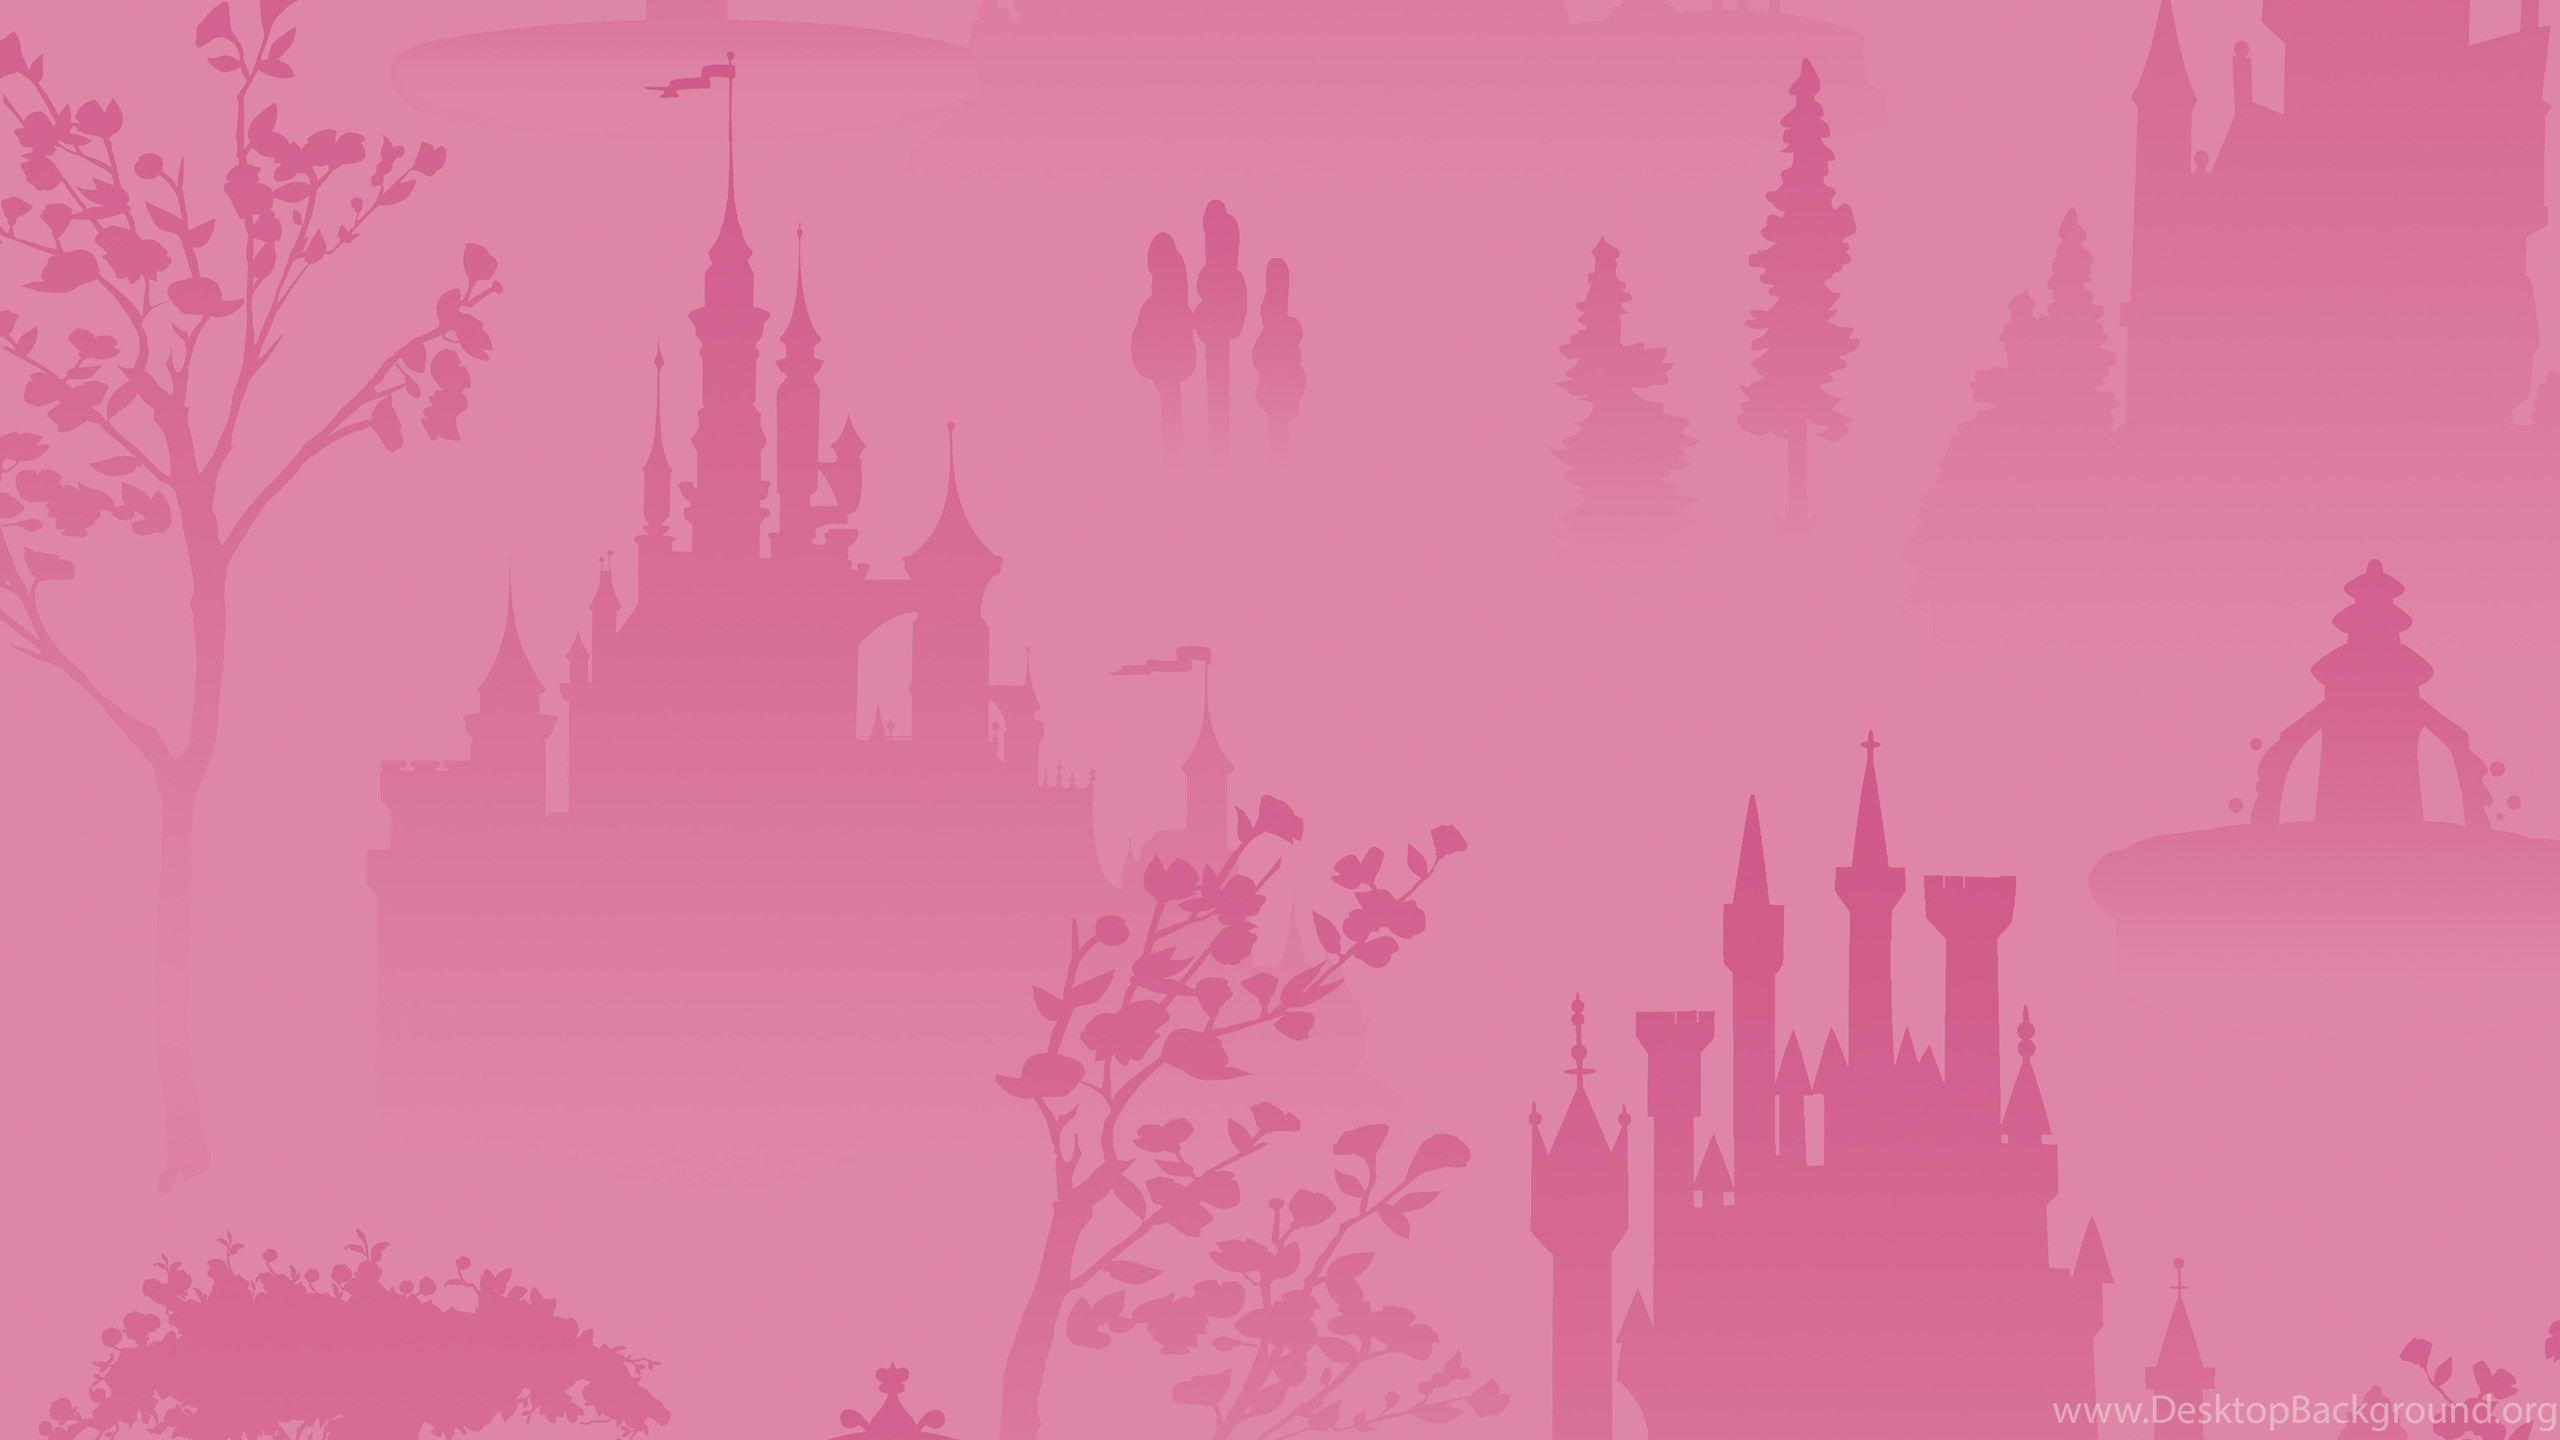 Hình nền Disney màu hồng: Hãy xem qua những hình nền Disney màu hồng tuyệt đẹp, những hình ảnh đẹp mắt sẽ đem lại cho bạn nhiều niềm vui và hạnh phúc. Dù cho bạn là ai, độ tuổi bao nhiêu, thì hình ảnh này vẫn giống như một sợi tơ kẽ tình yêu, kết nối tất cả chúng ta lại với nhau.